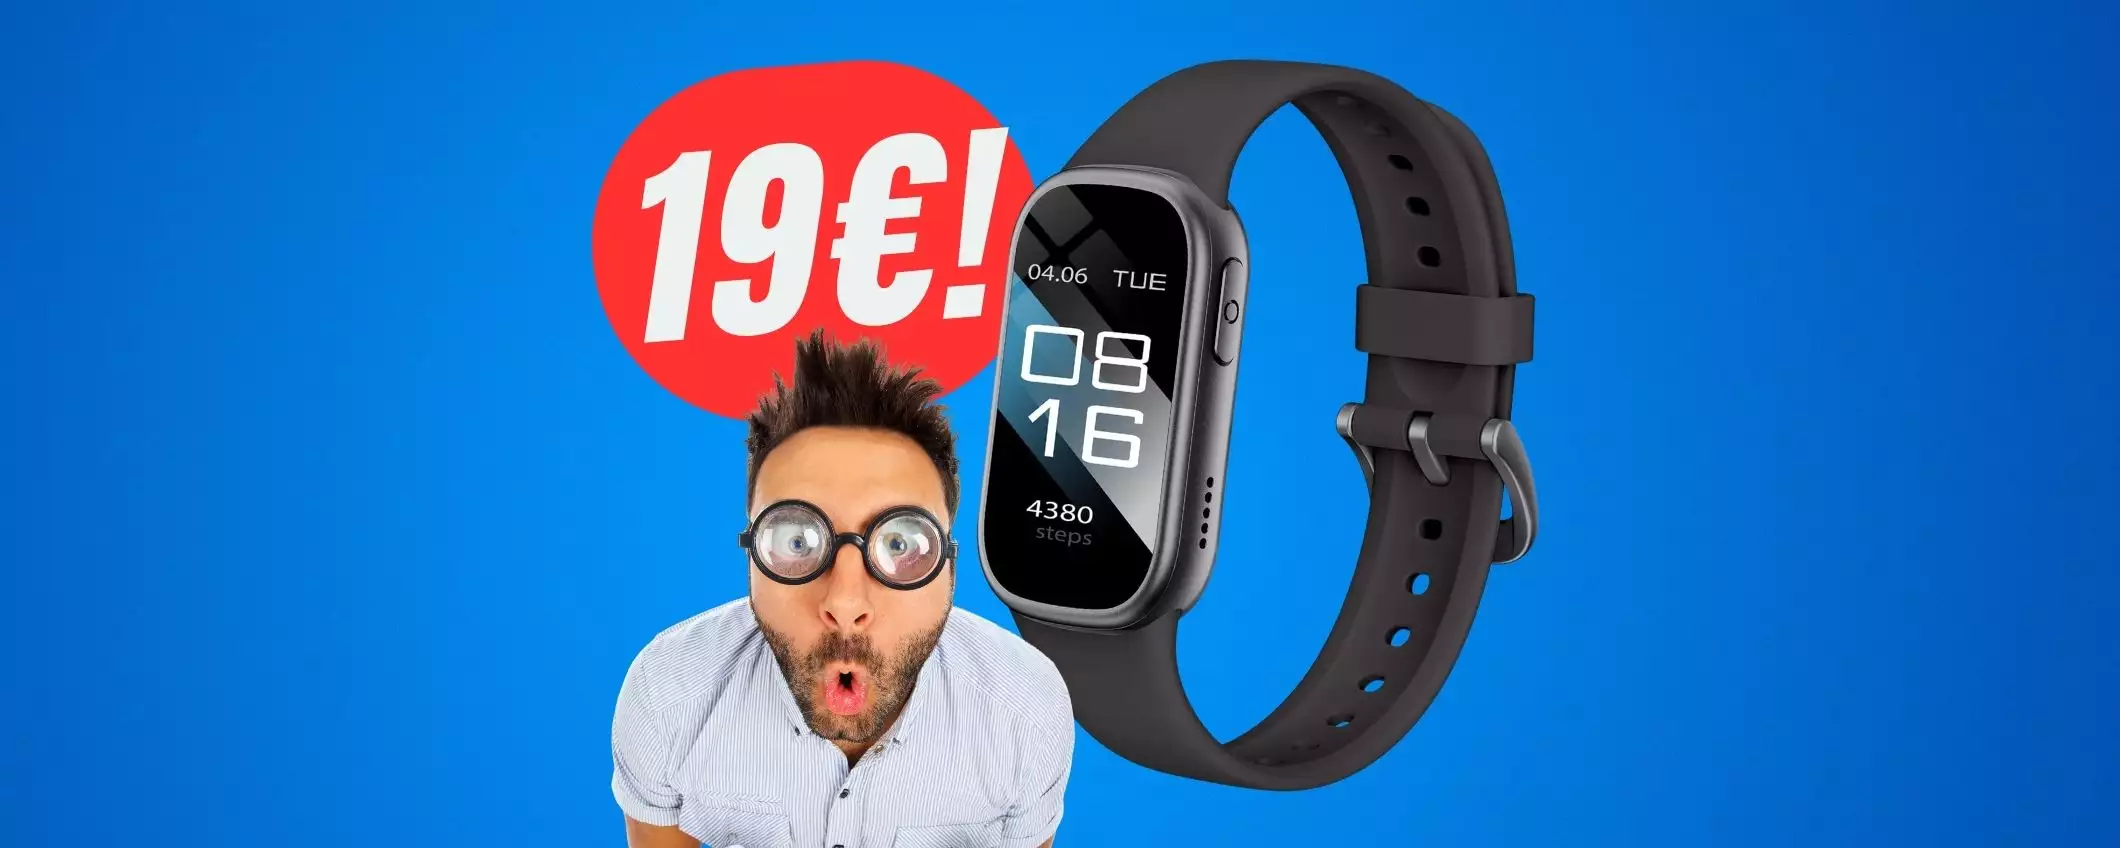 SCONTO FOLLE del 75% per questo smartwatch che crolla a 19€!